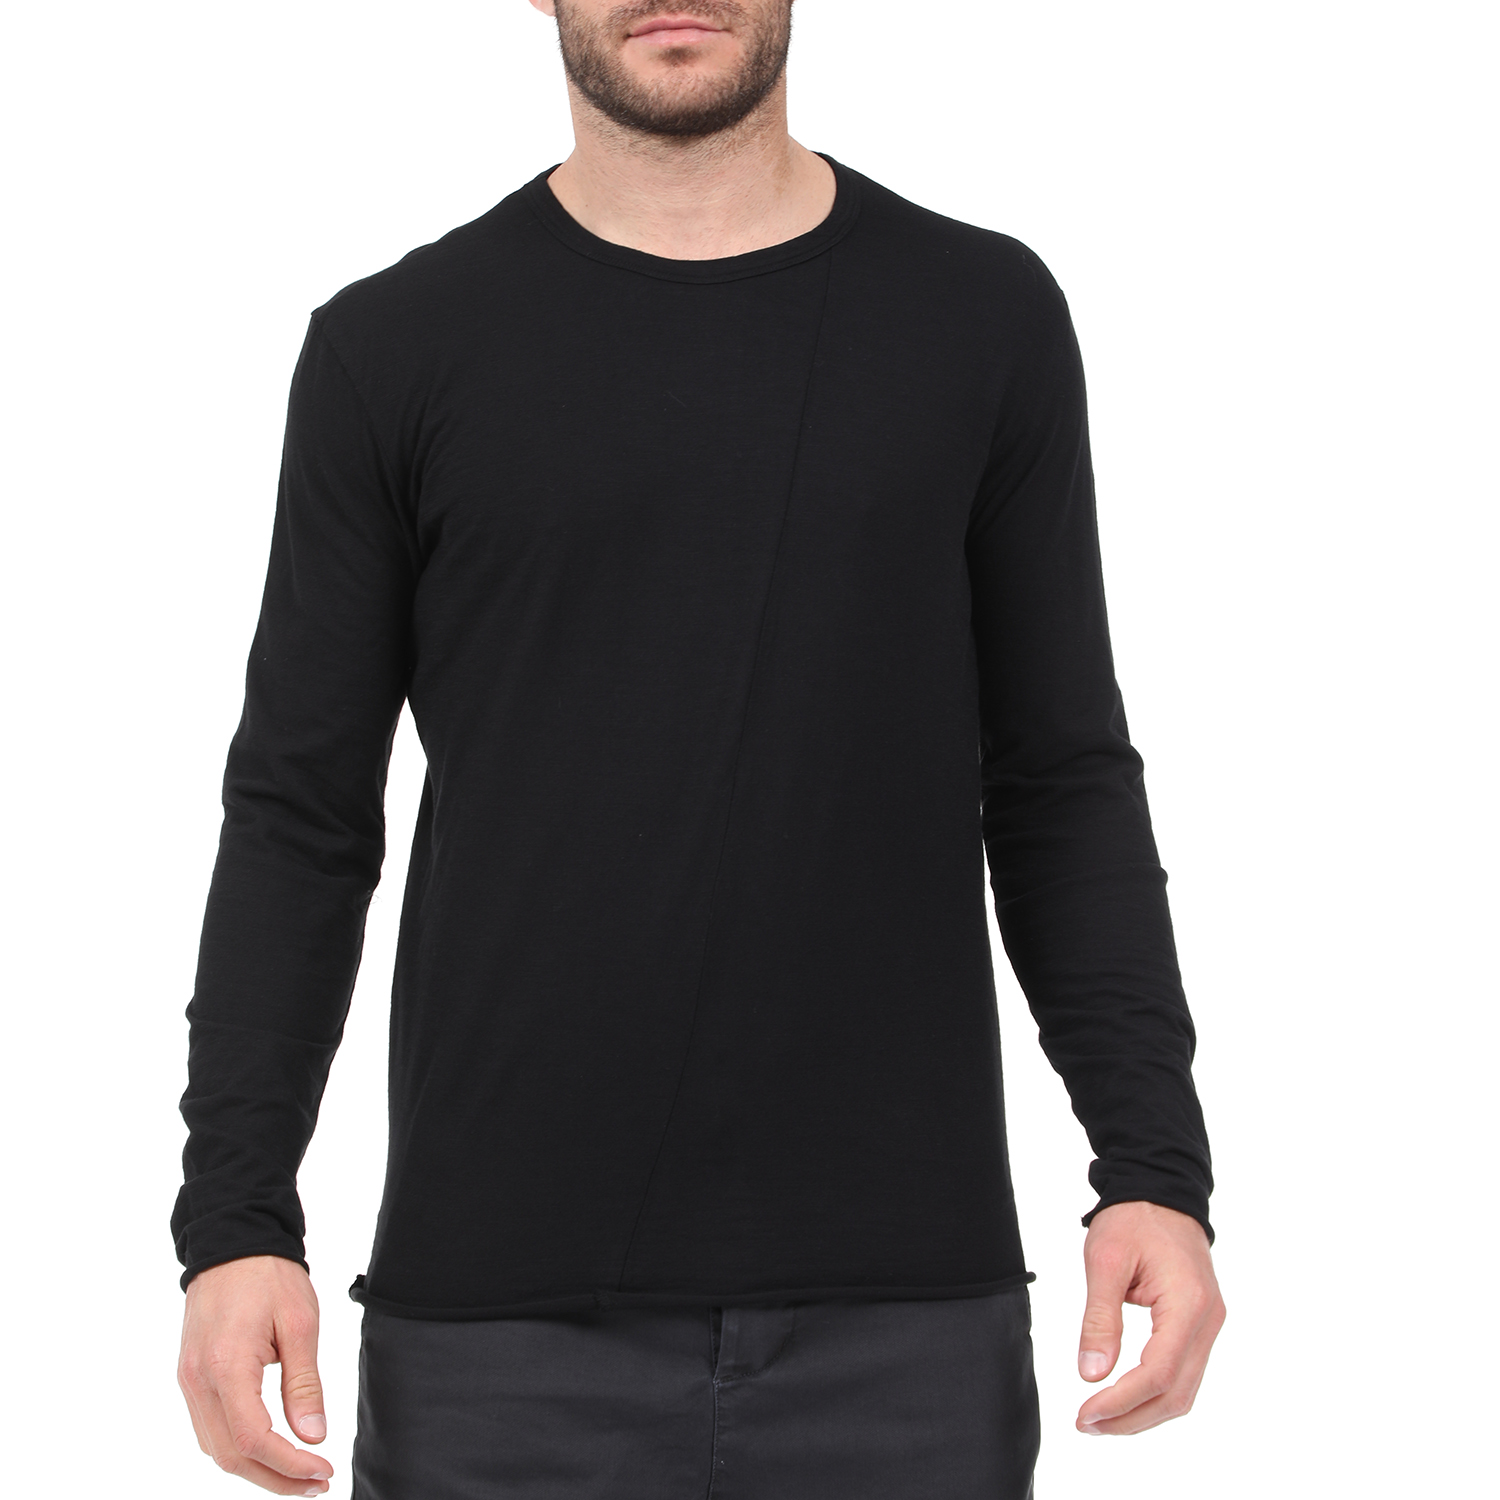 Ανδρικά/Ρούχα/Πλεκτά-Ζακέτες/Πουλόβερ DIRTY LAUNDRY - Ανδρική μακρυμάνικη μπλούζα DIRTY LAUNDRY μαύρη